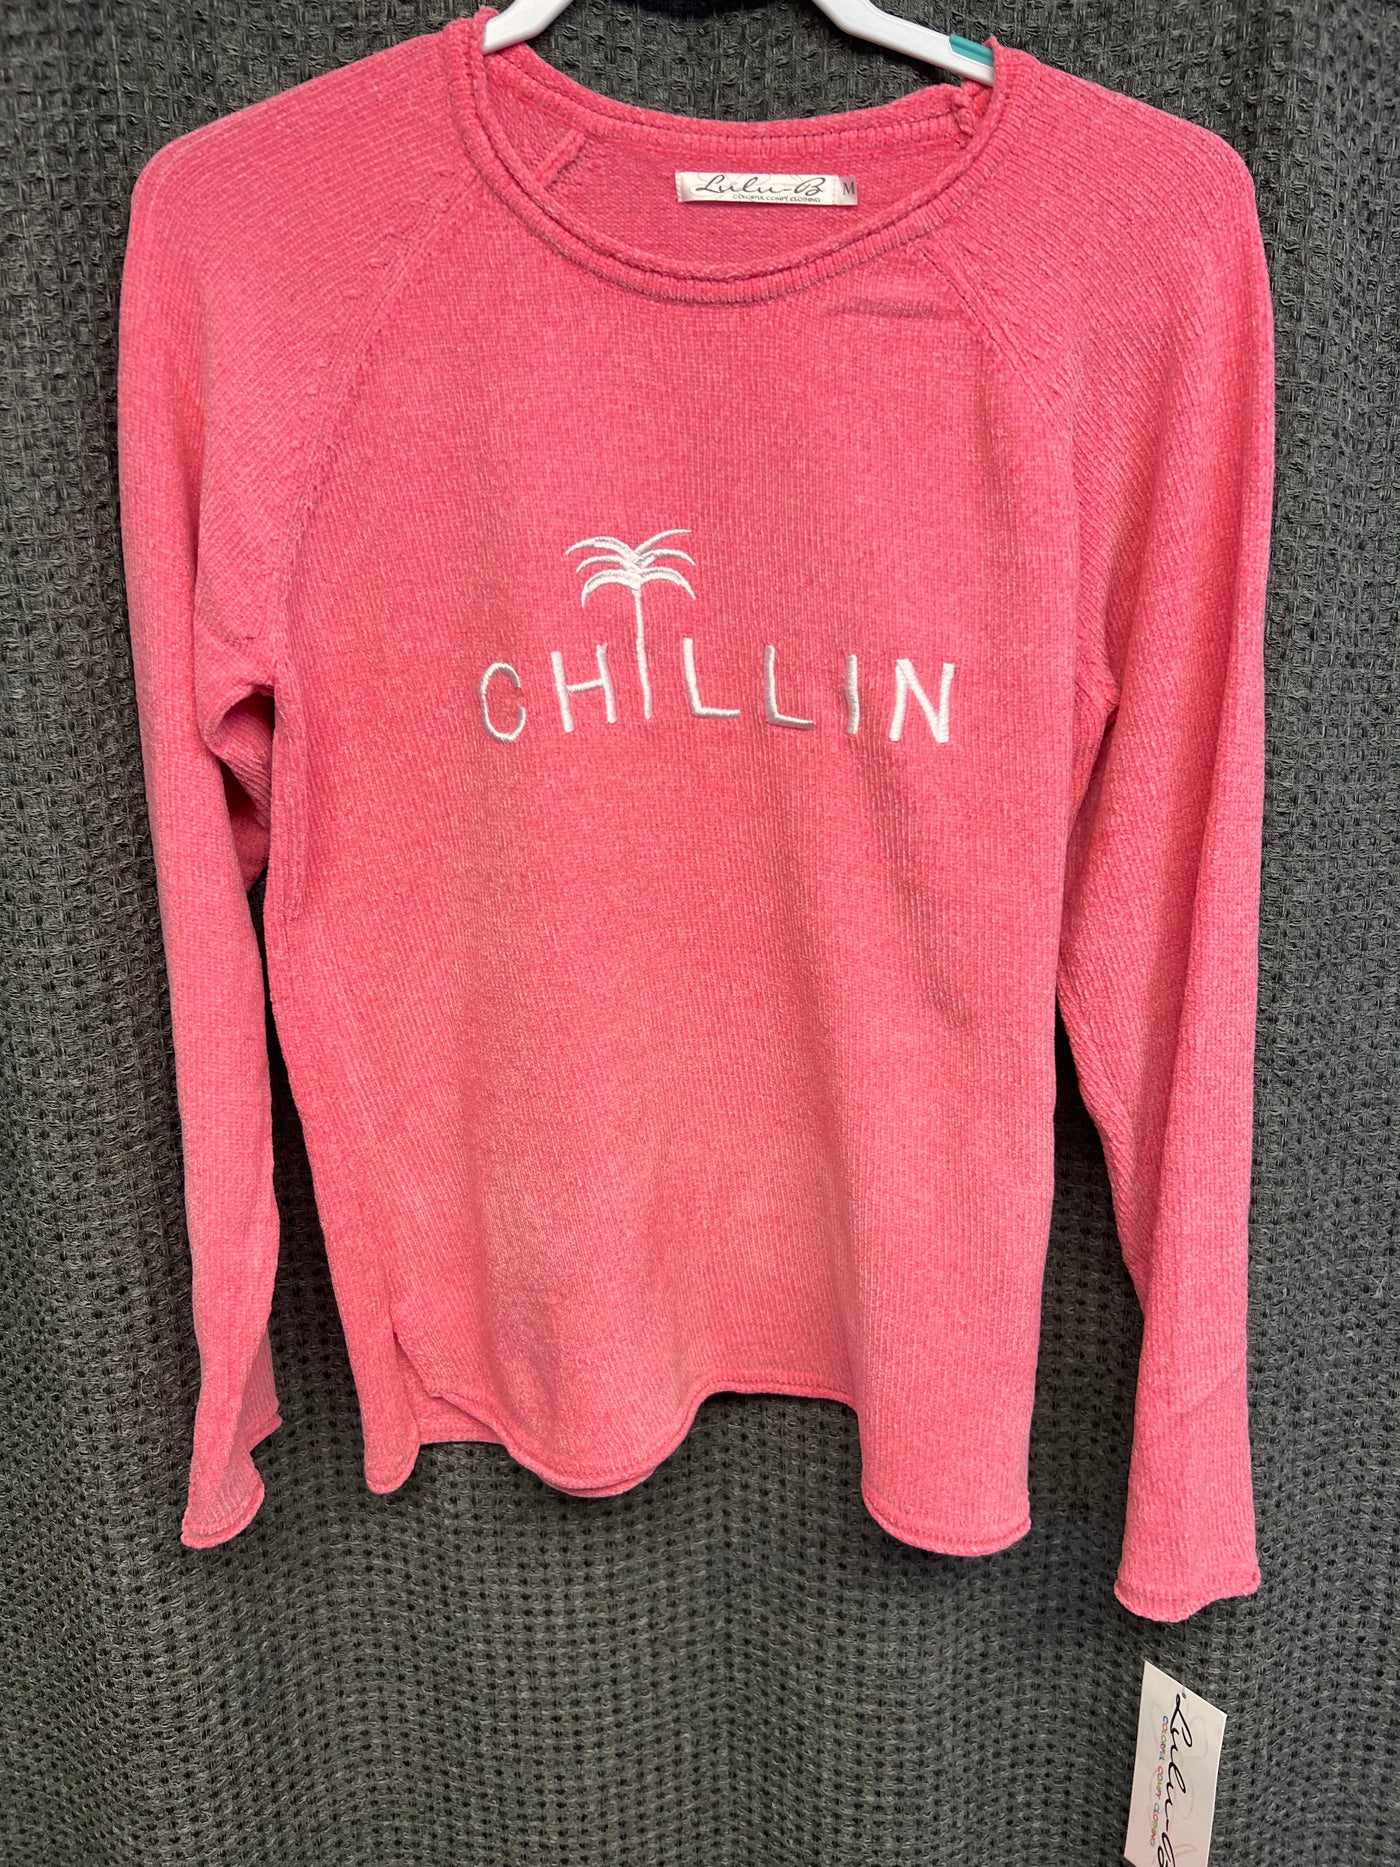 Chillin Sweater